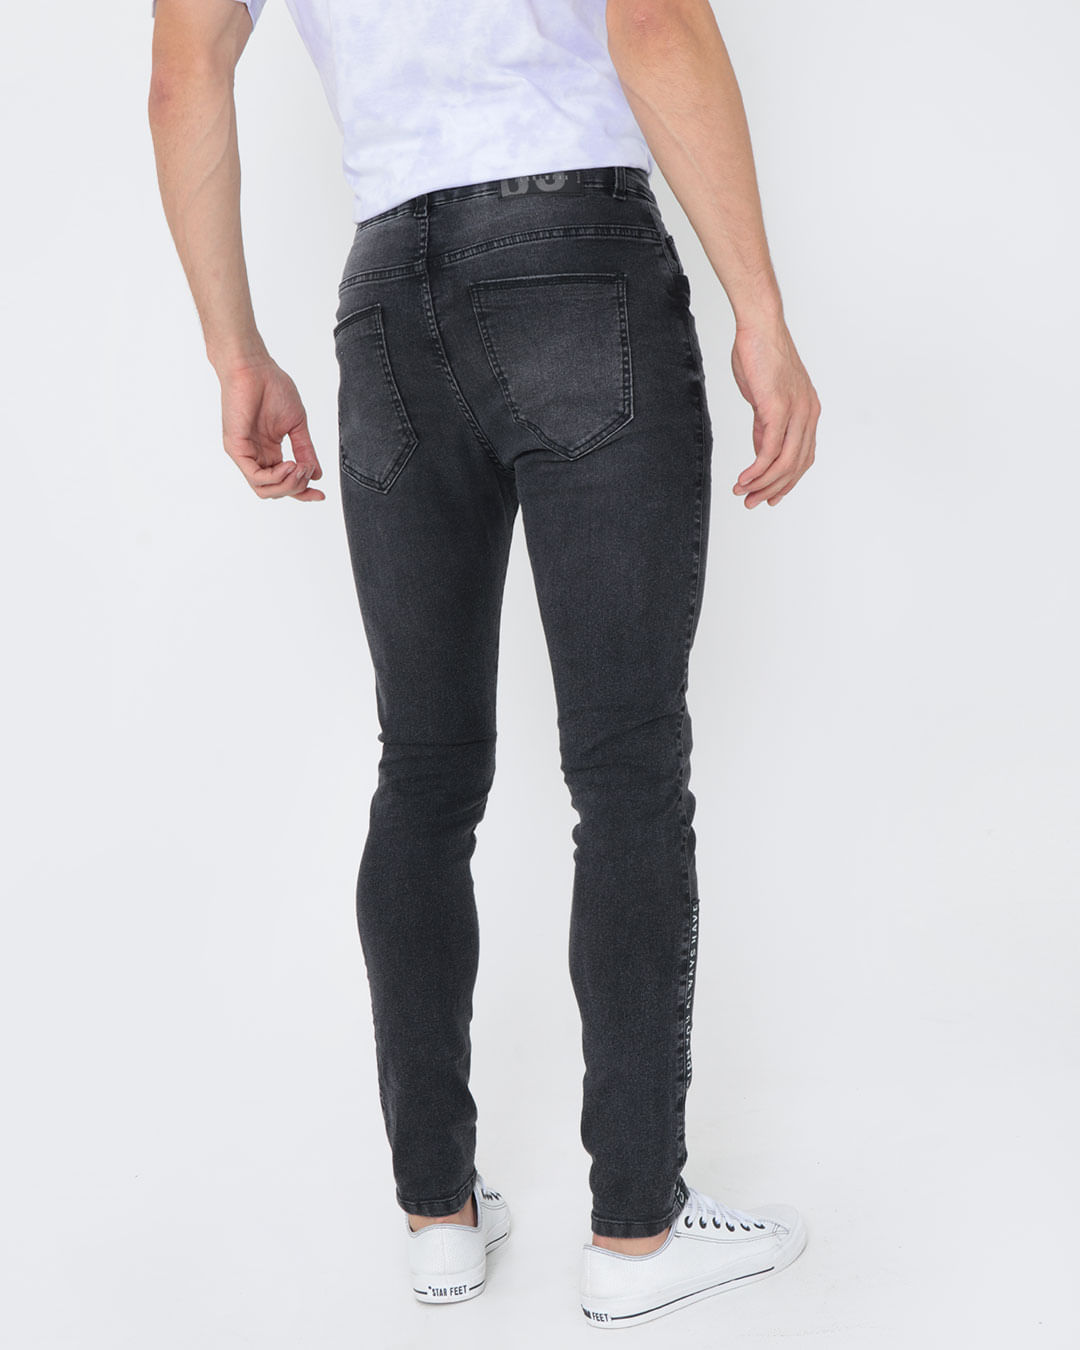 Calca-33055-Jeans-Black-Bigode-Jv---Black-Jeans-Medio